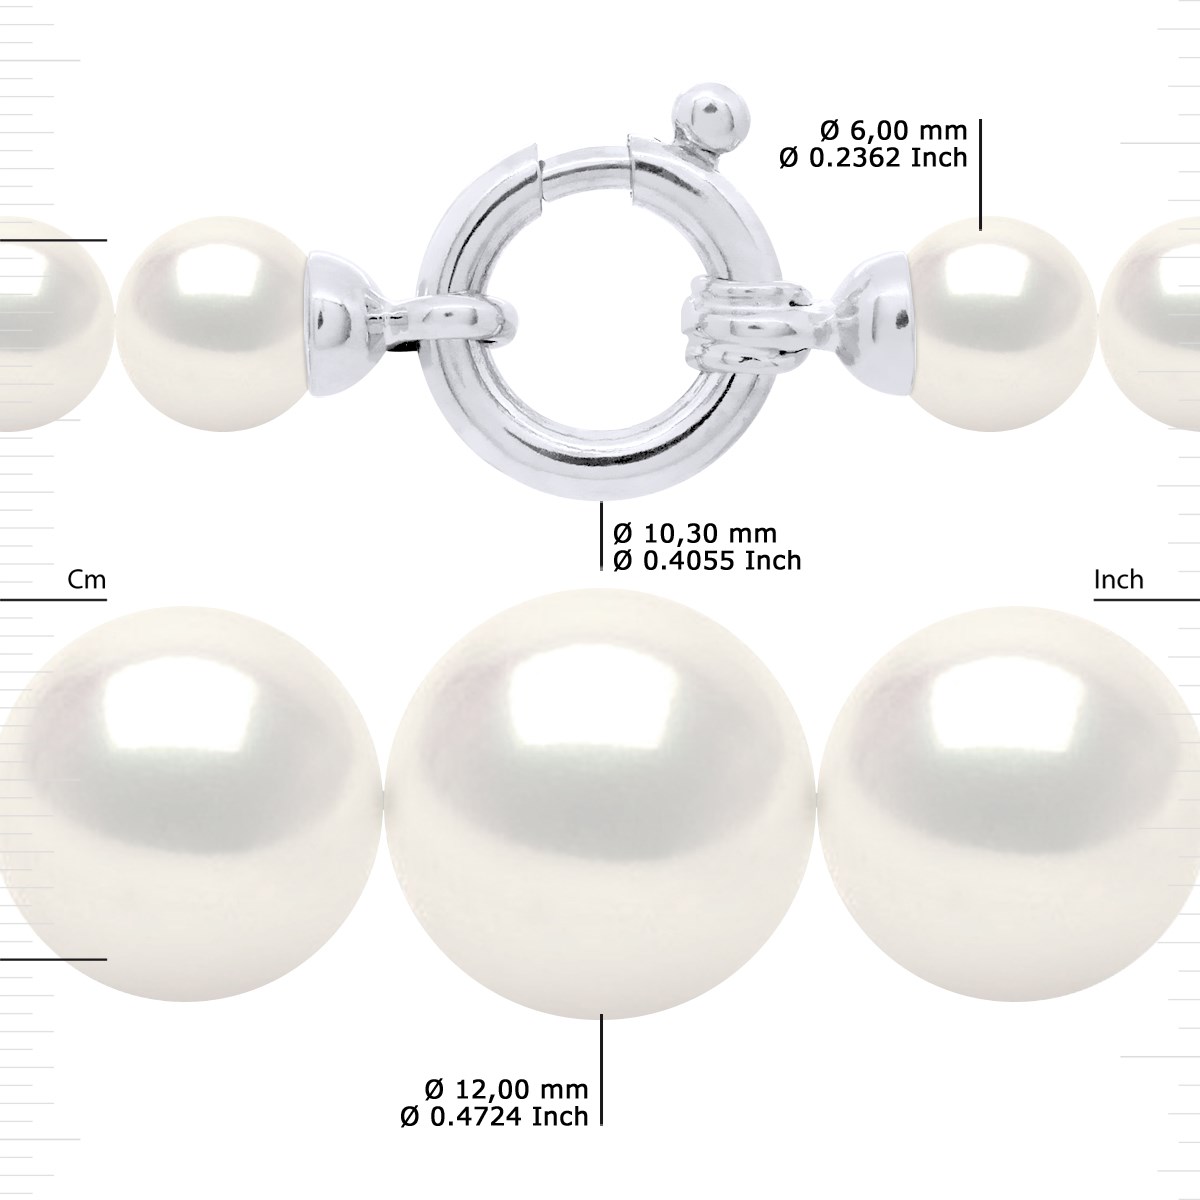 Collier Rang 'Princesse' - Véritables Perles de Culture d'Eau Douce Rondes de 12 à 6 mm - Blanc Naturel - Or Blanc 750 Millièmes - vue 3